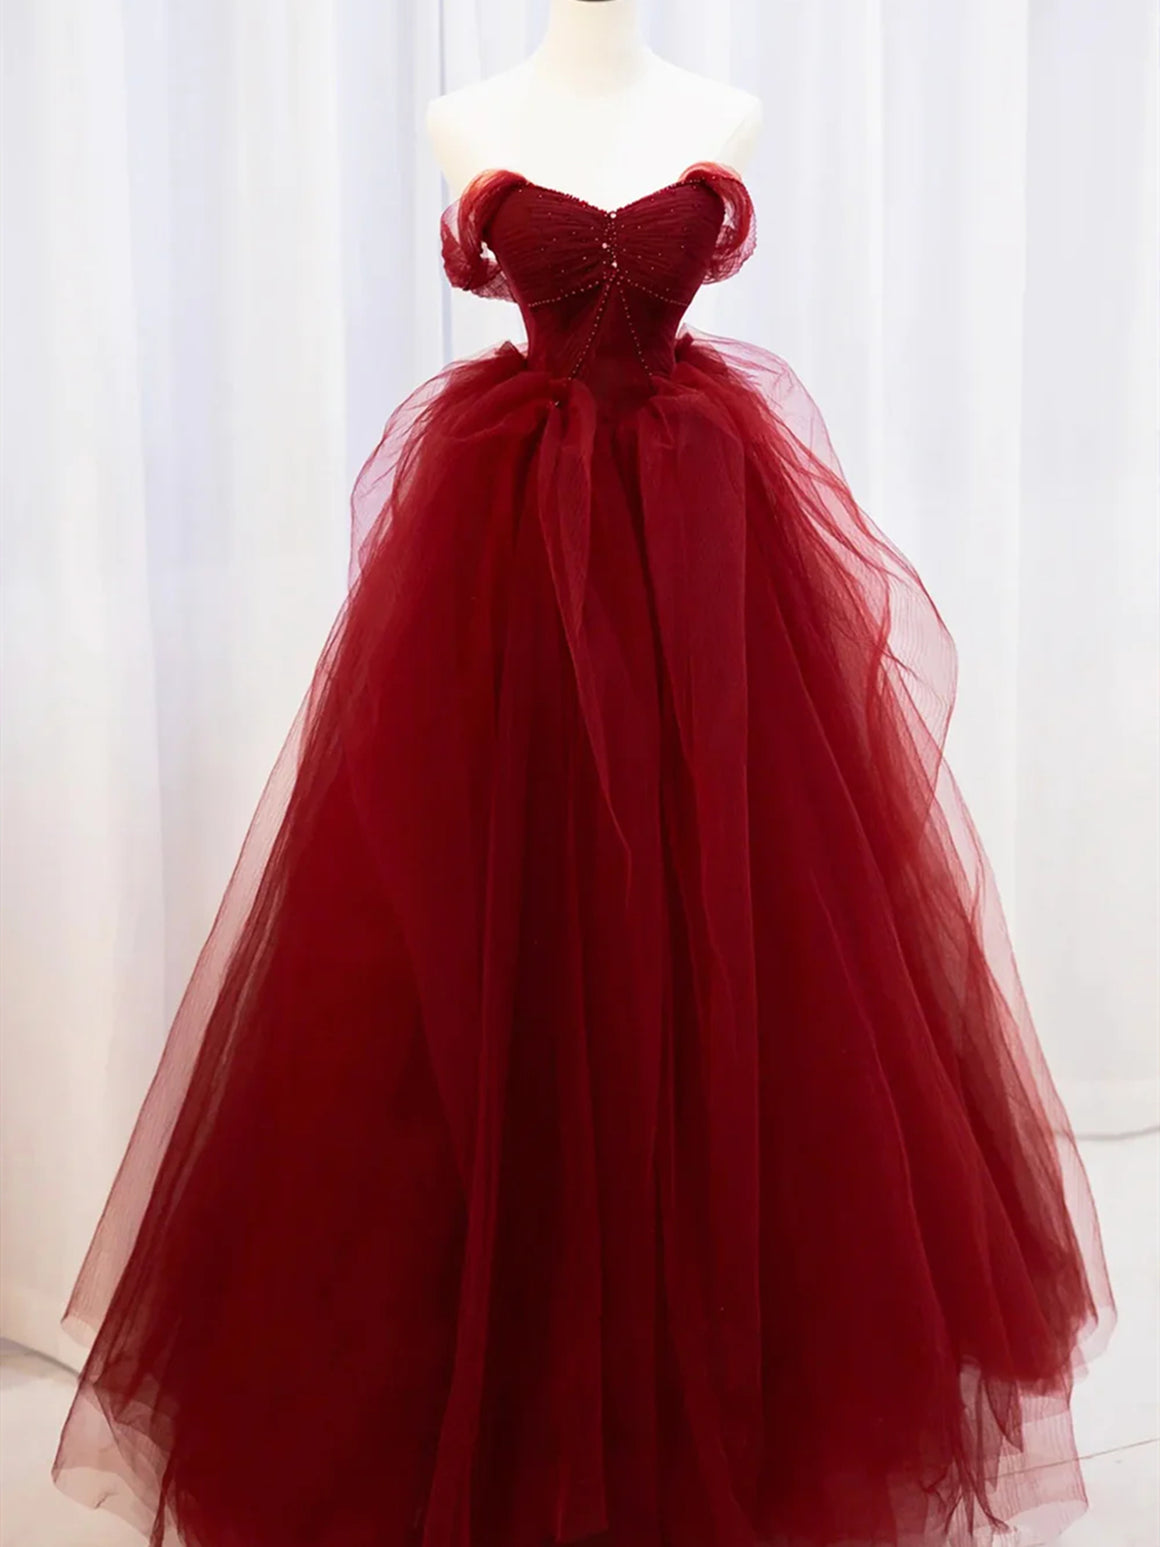 Off the Shoulder Burgundy Long Prom Dresses, Wine Red Long Formal Evening Dresses